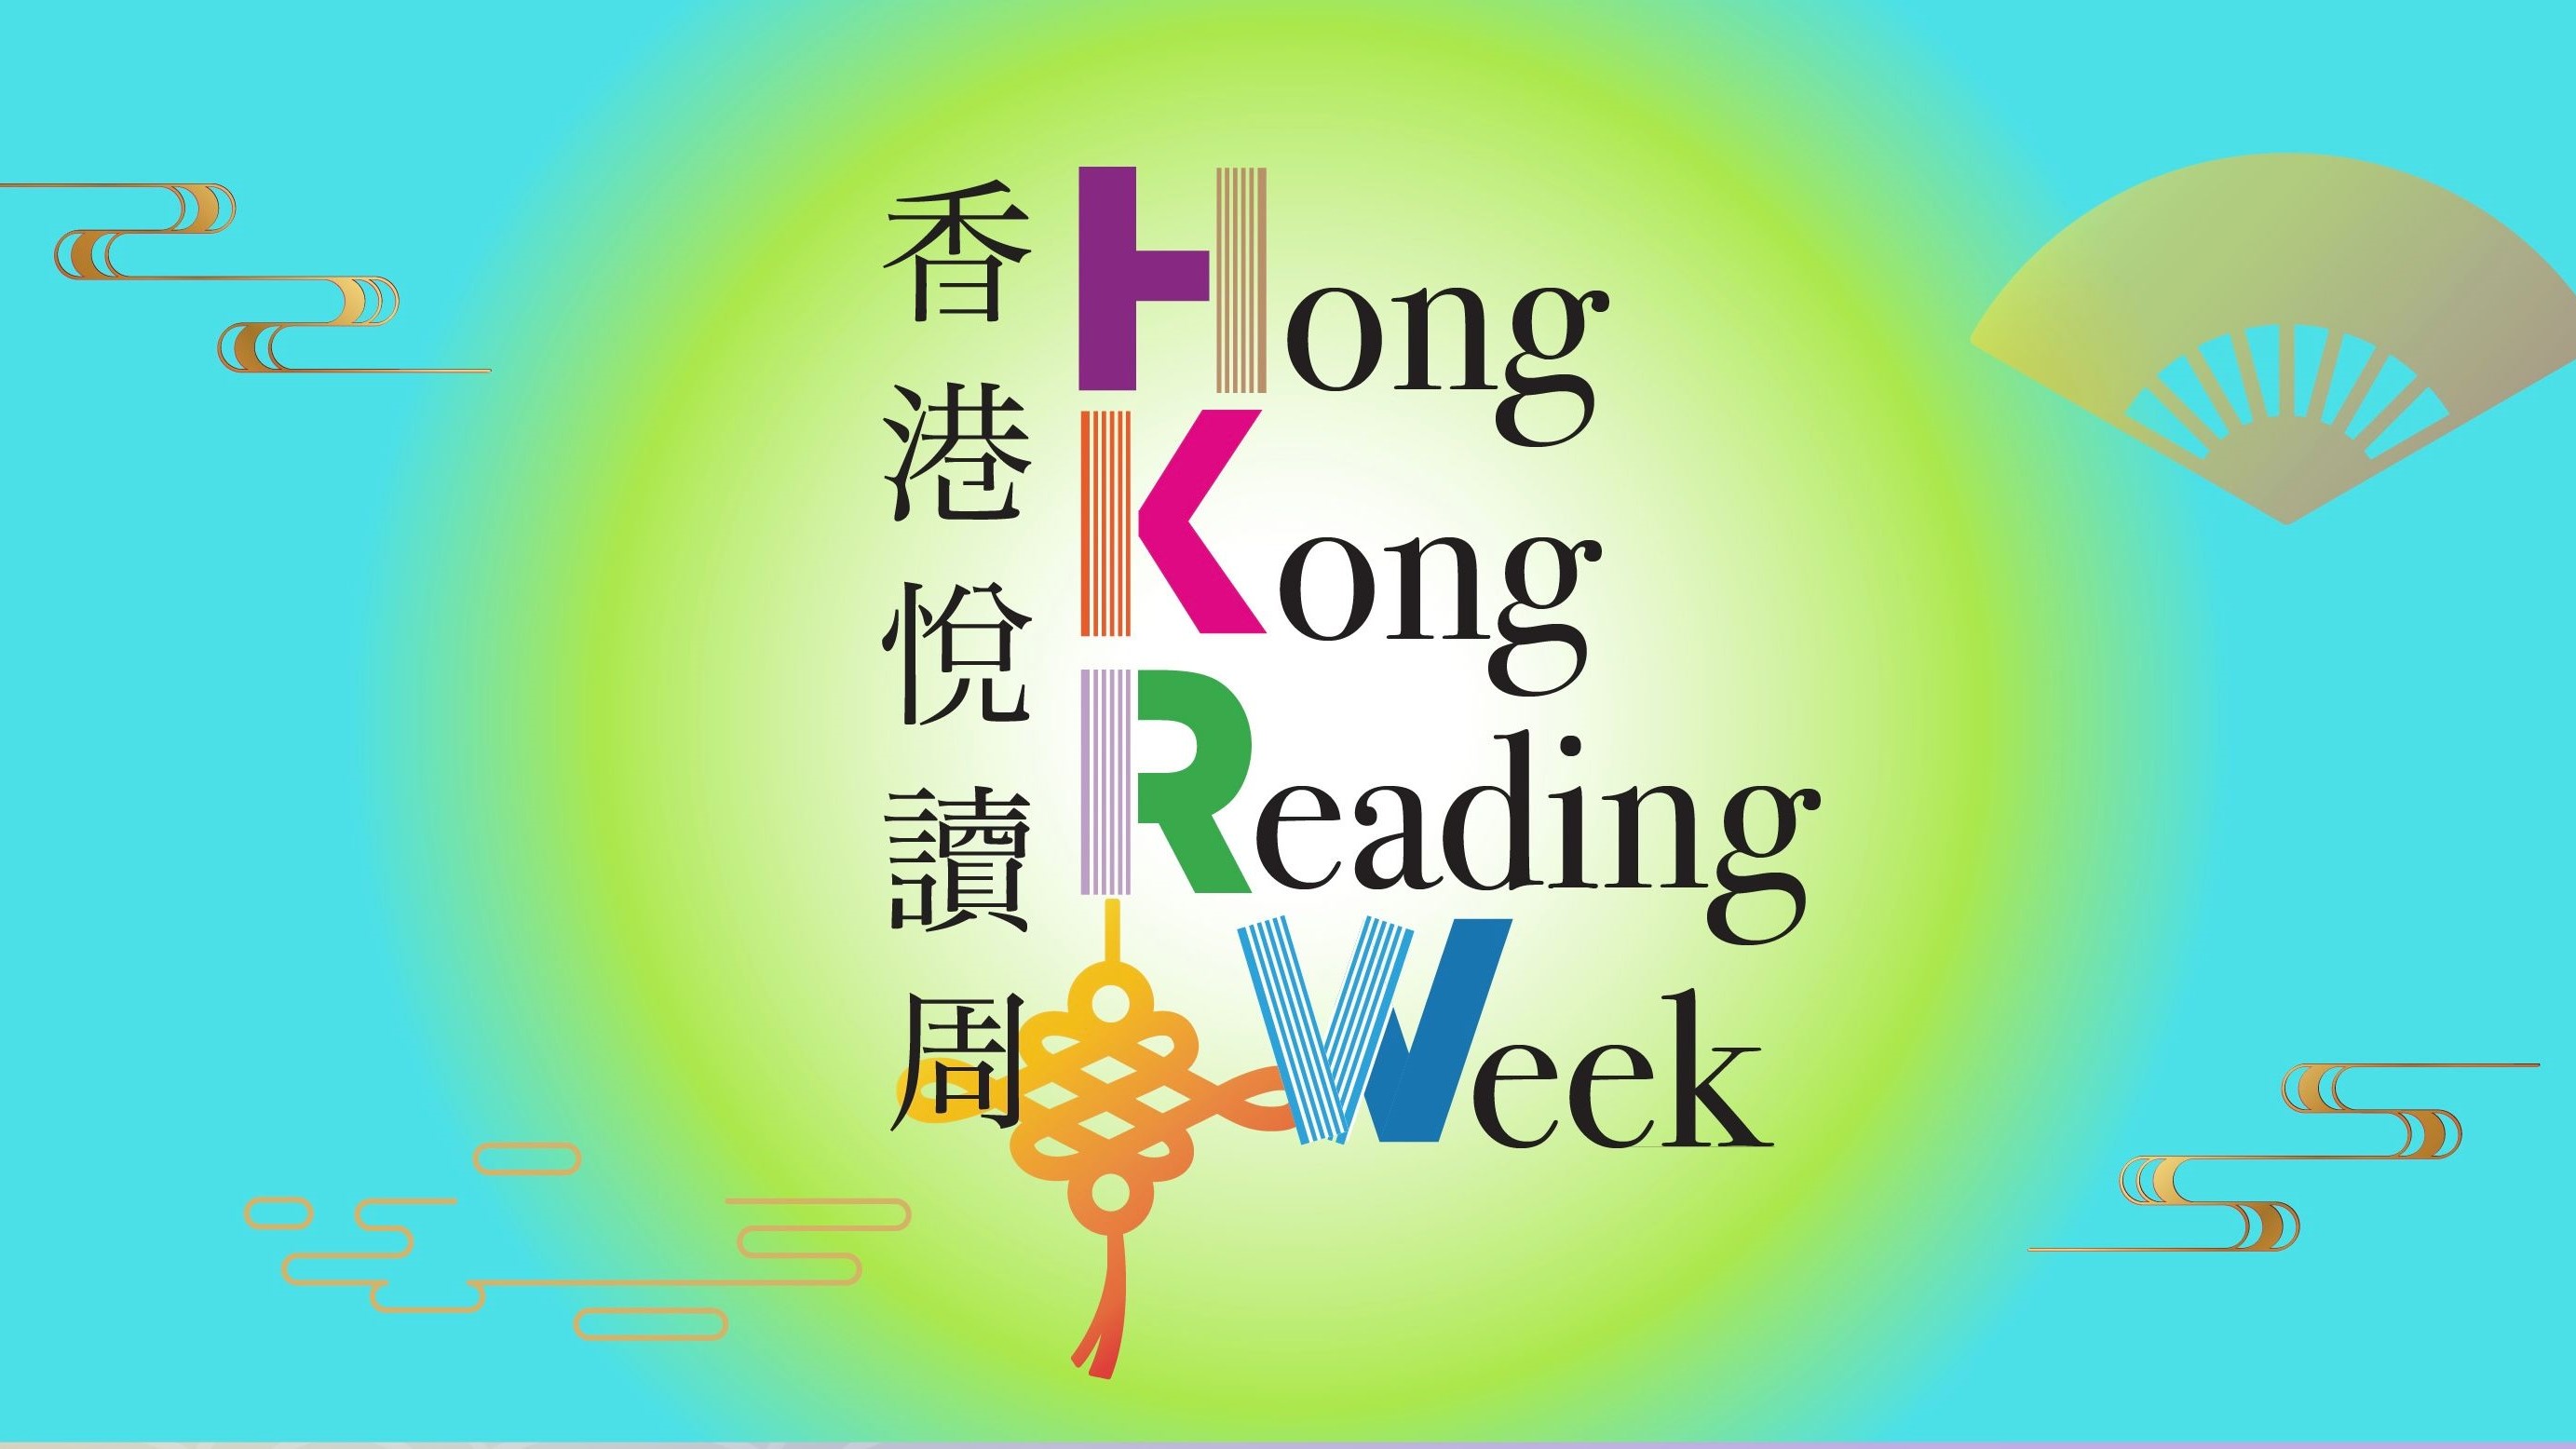 香港悅讀周 | 書香四月齊來學習中華文化 多場國學活動免費參與